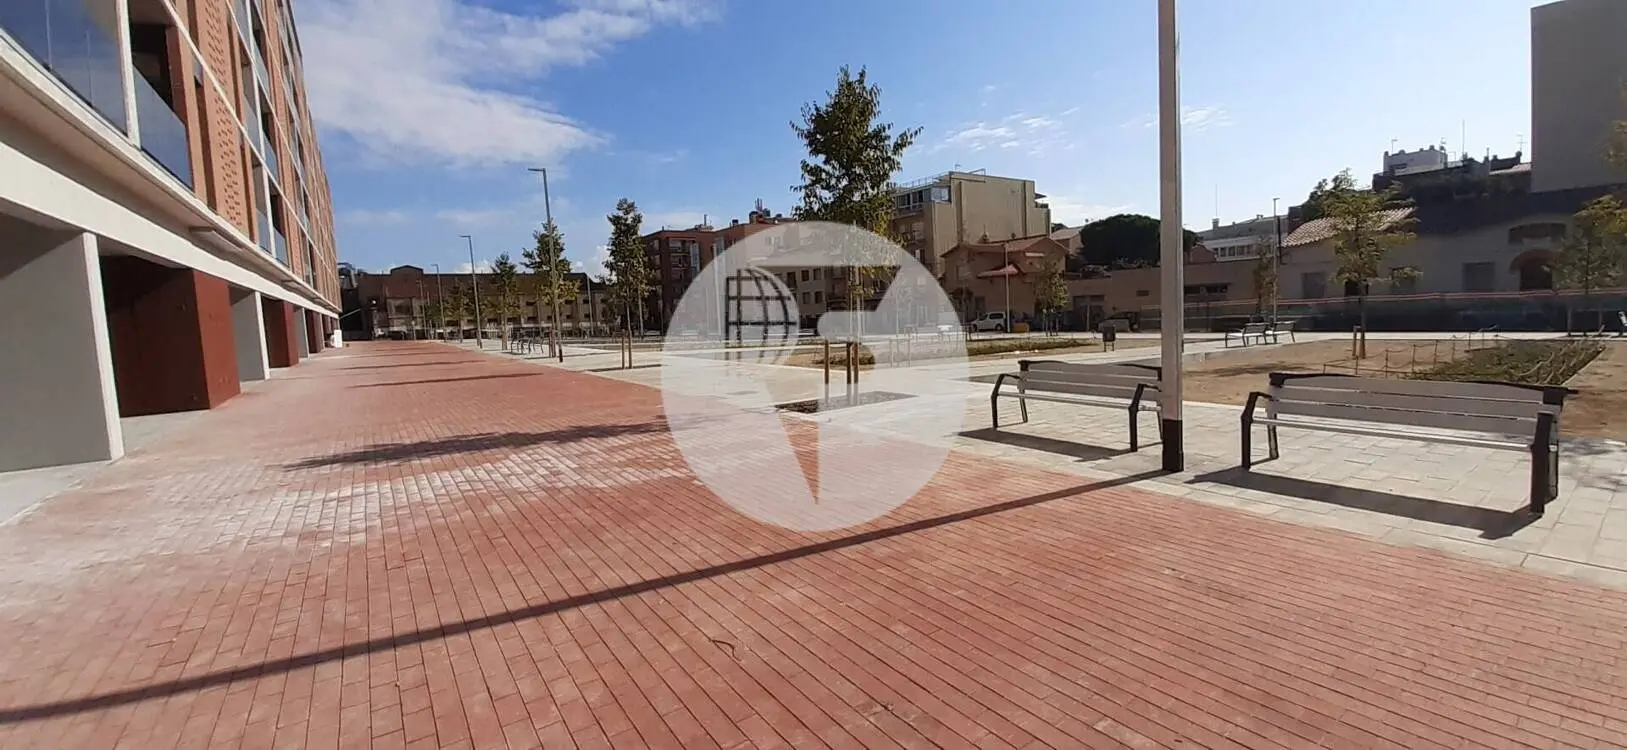 Local comercial de Obra Nueva en Sabadell IE-220756 2